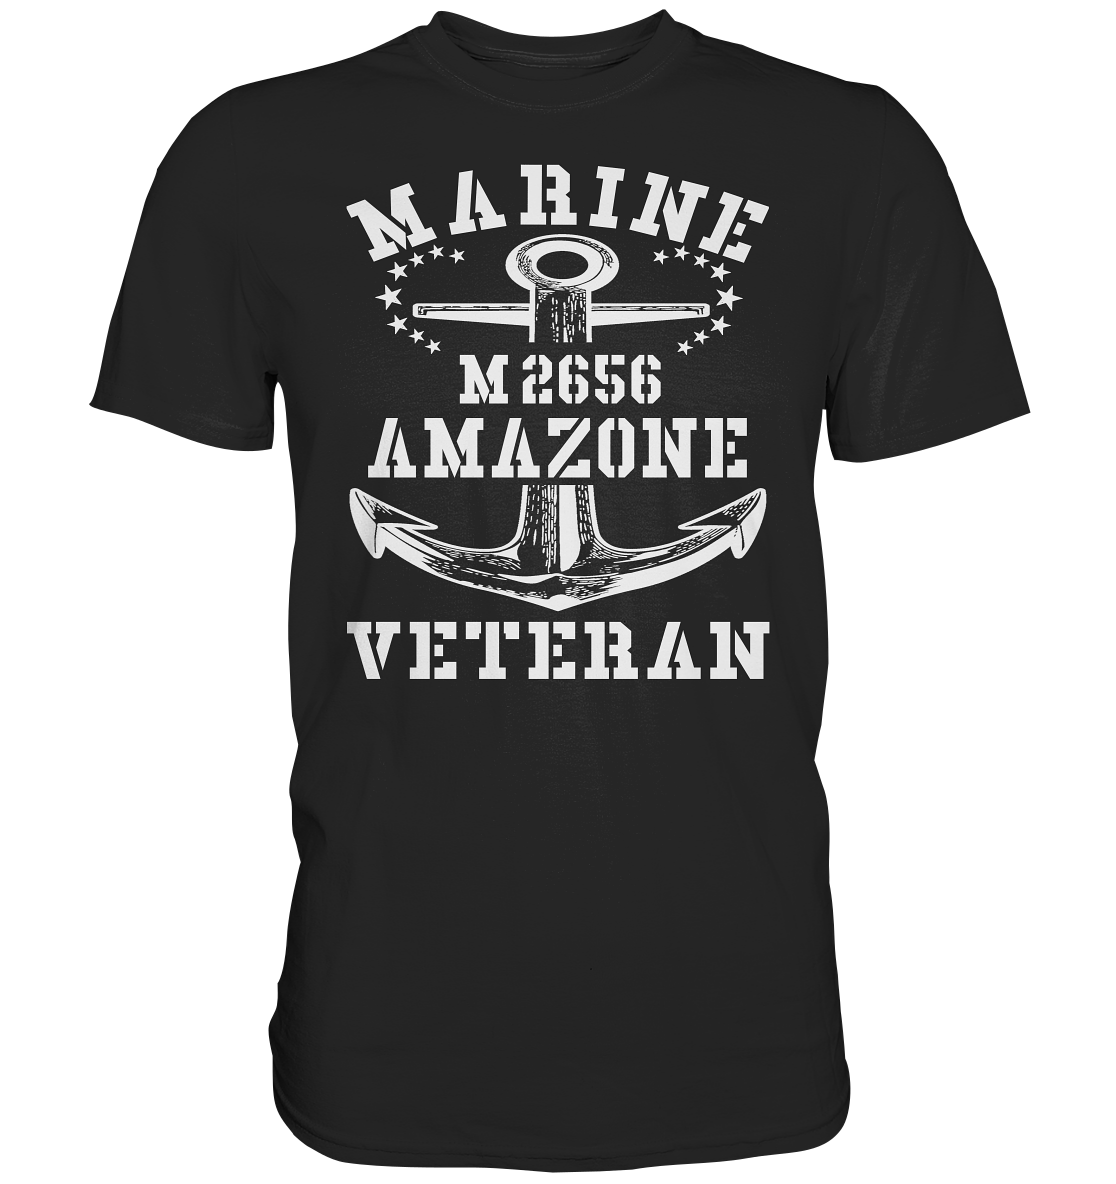 BiMi M2656 AMAZONE Marine Veteran - Premium Shirt